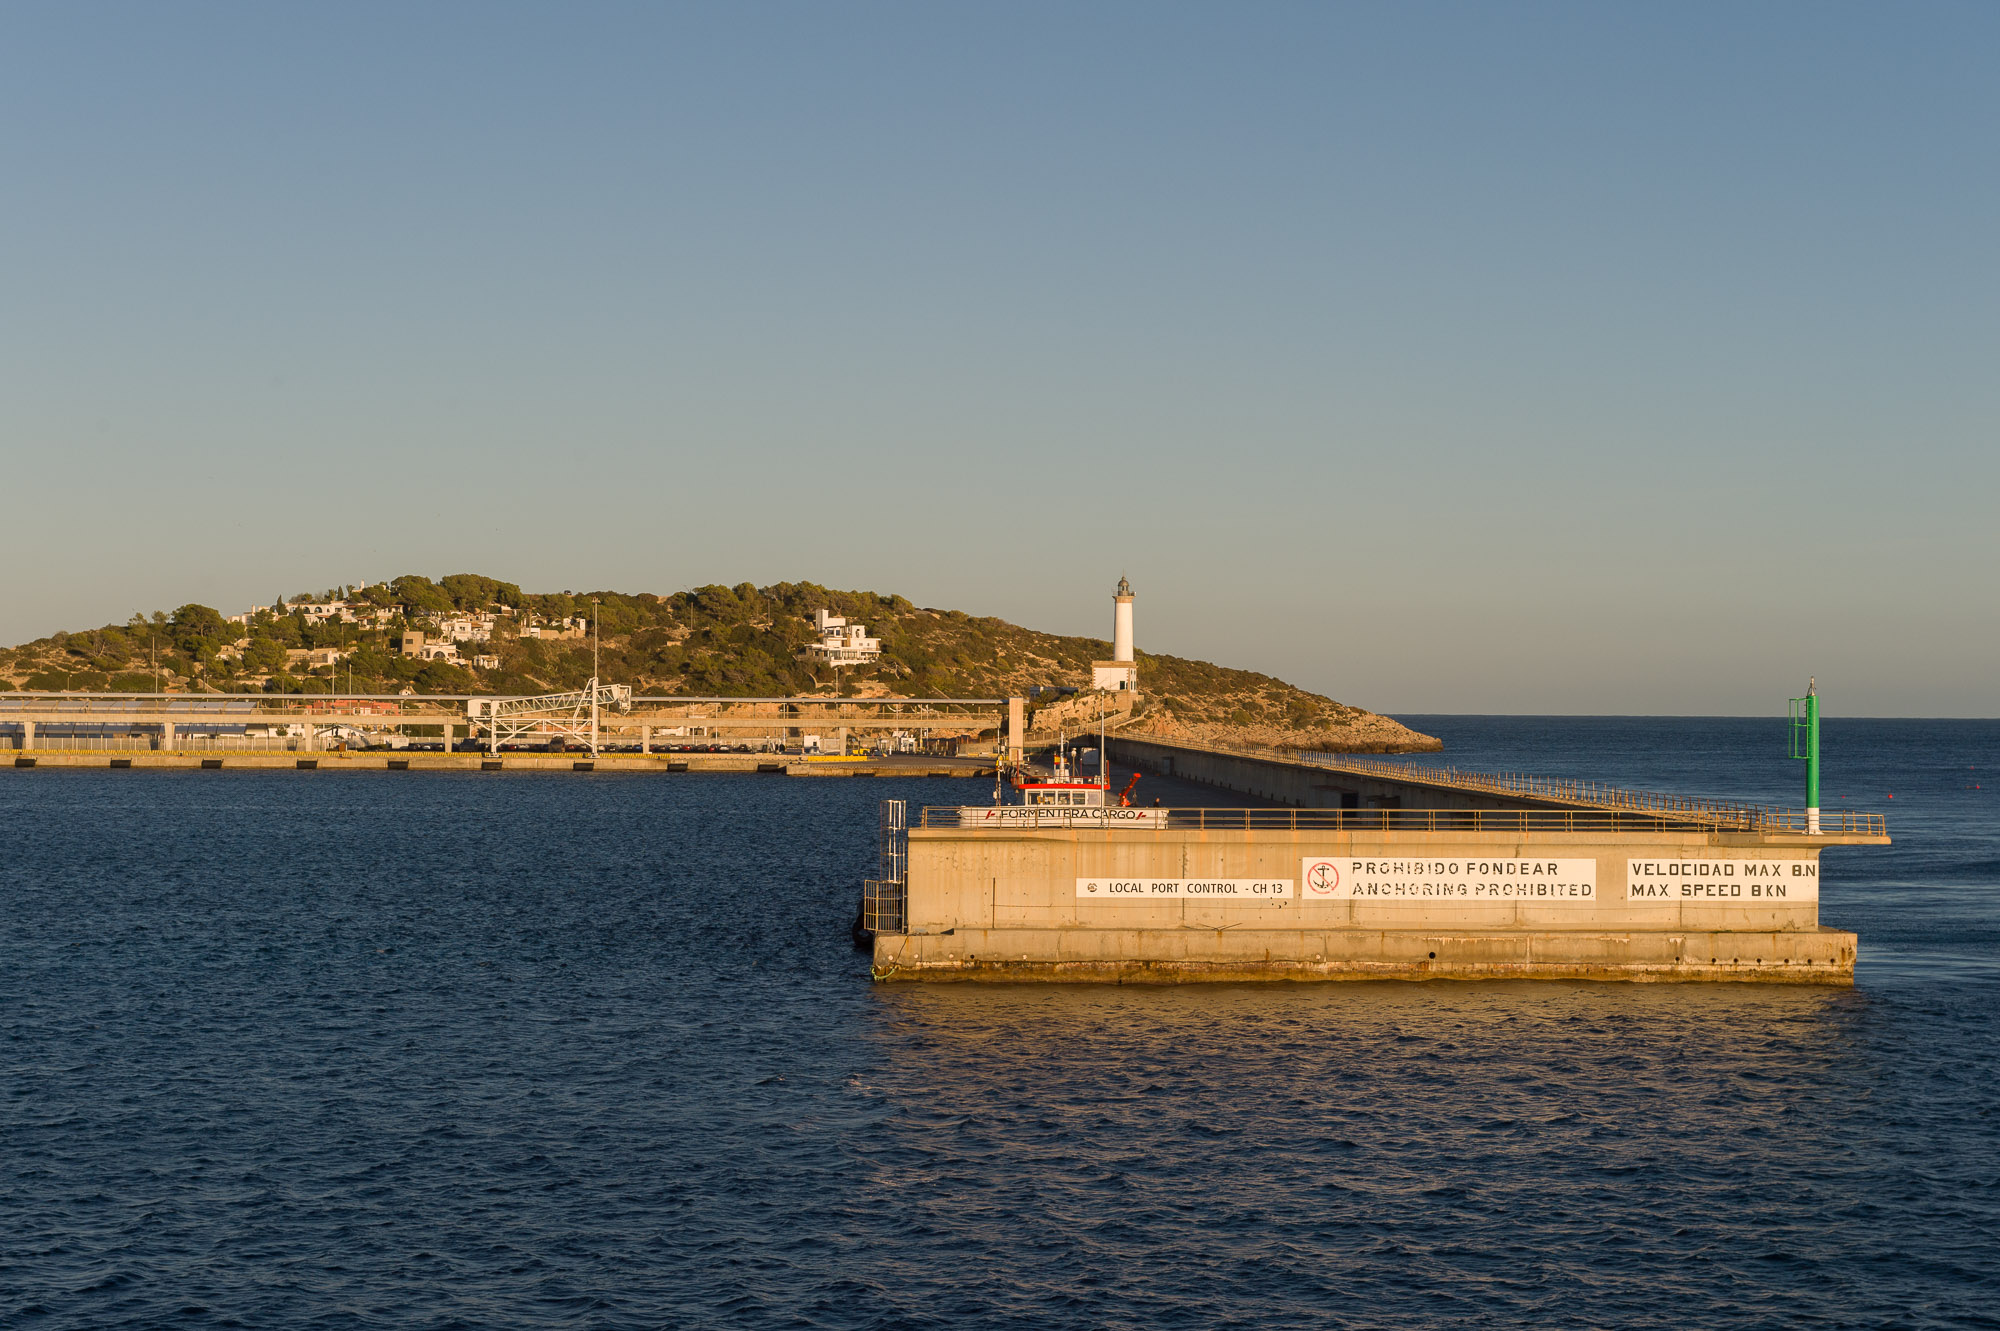 Die Arbeiten zum Schutz der Fundamente des Deichs von Botafoc im Hafen von Eivissa wurden in Rekordzeit abgeschlossen